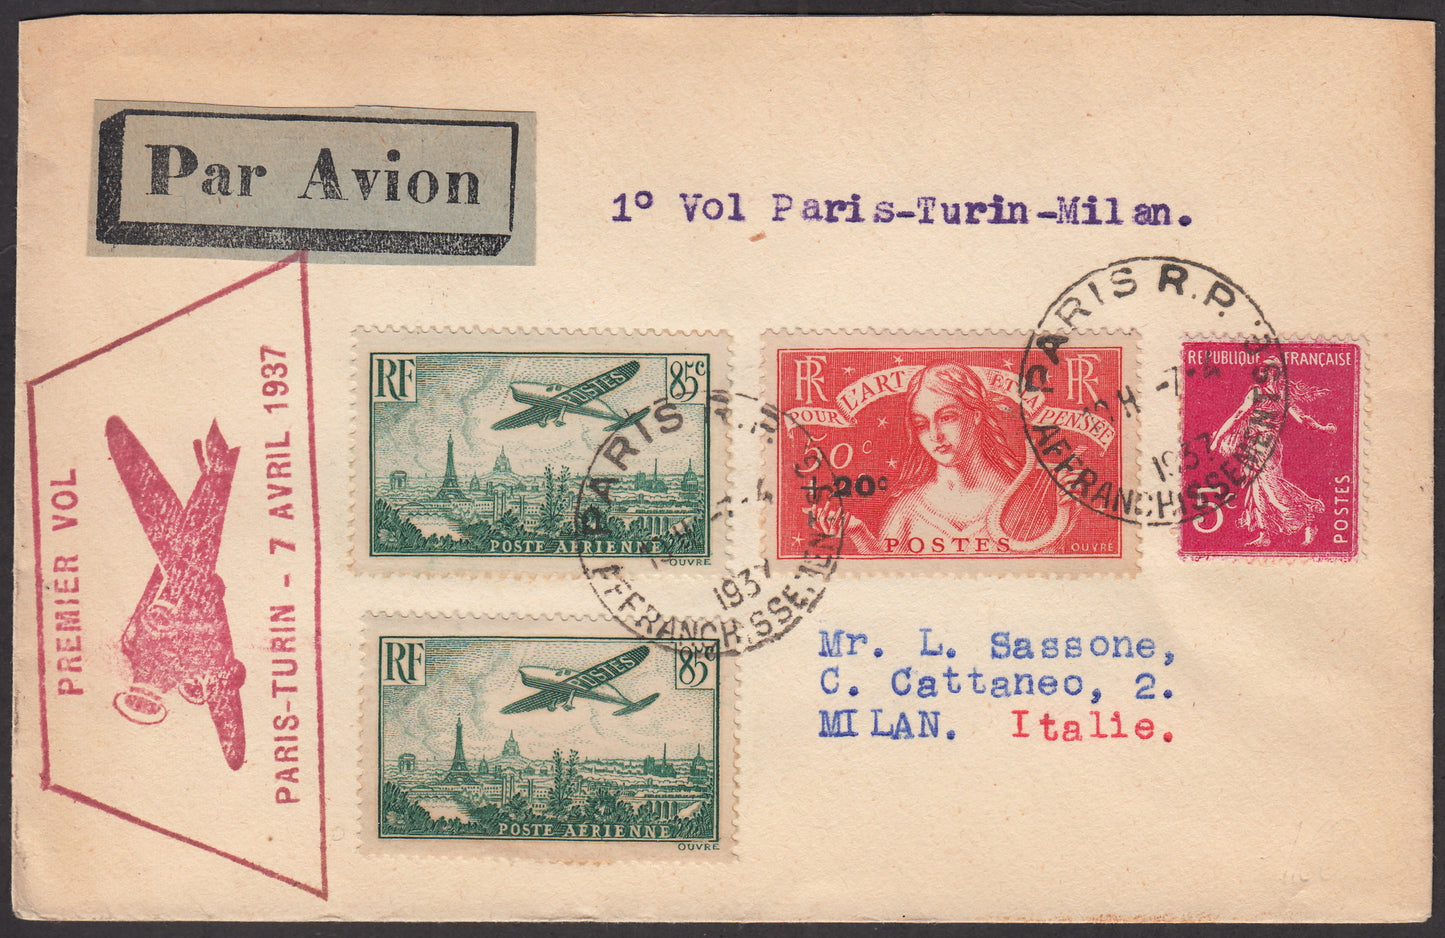 1937 - Primo volo Parigi - Torino - MIlano 7/4/37 con francobolli di Francia, diretta a Luigi Sassone